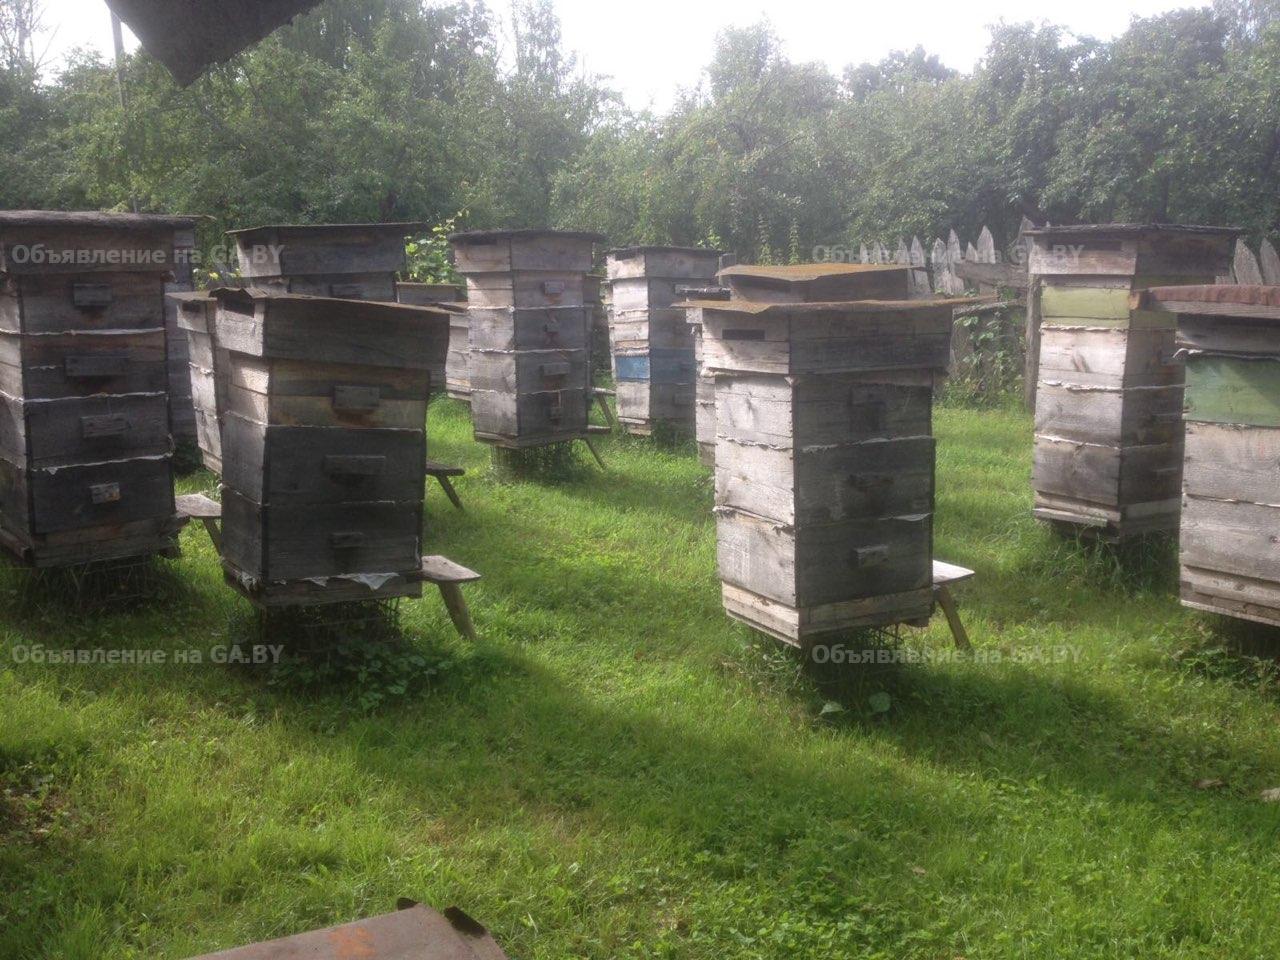 Продам Мед пчелиный, прополис, перга - GA.BY